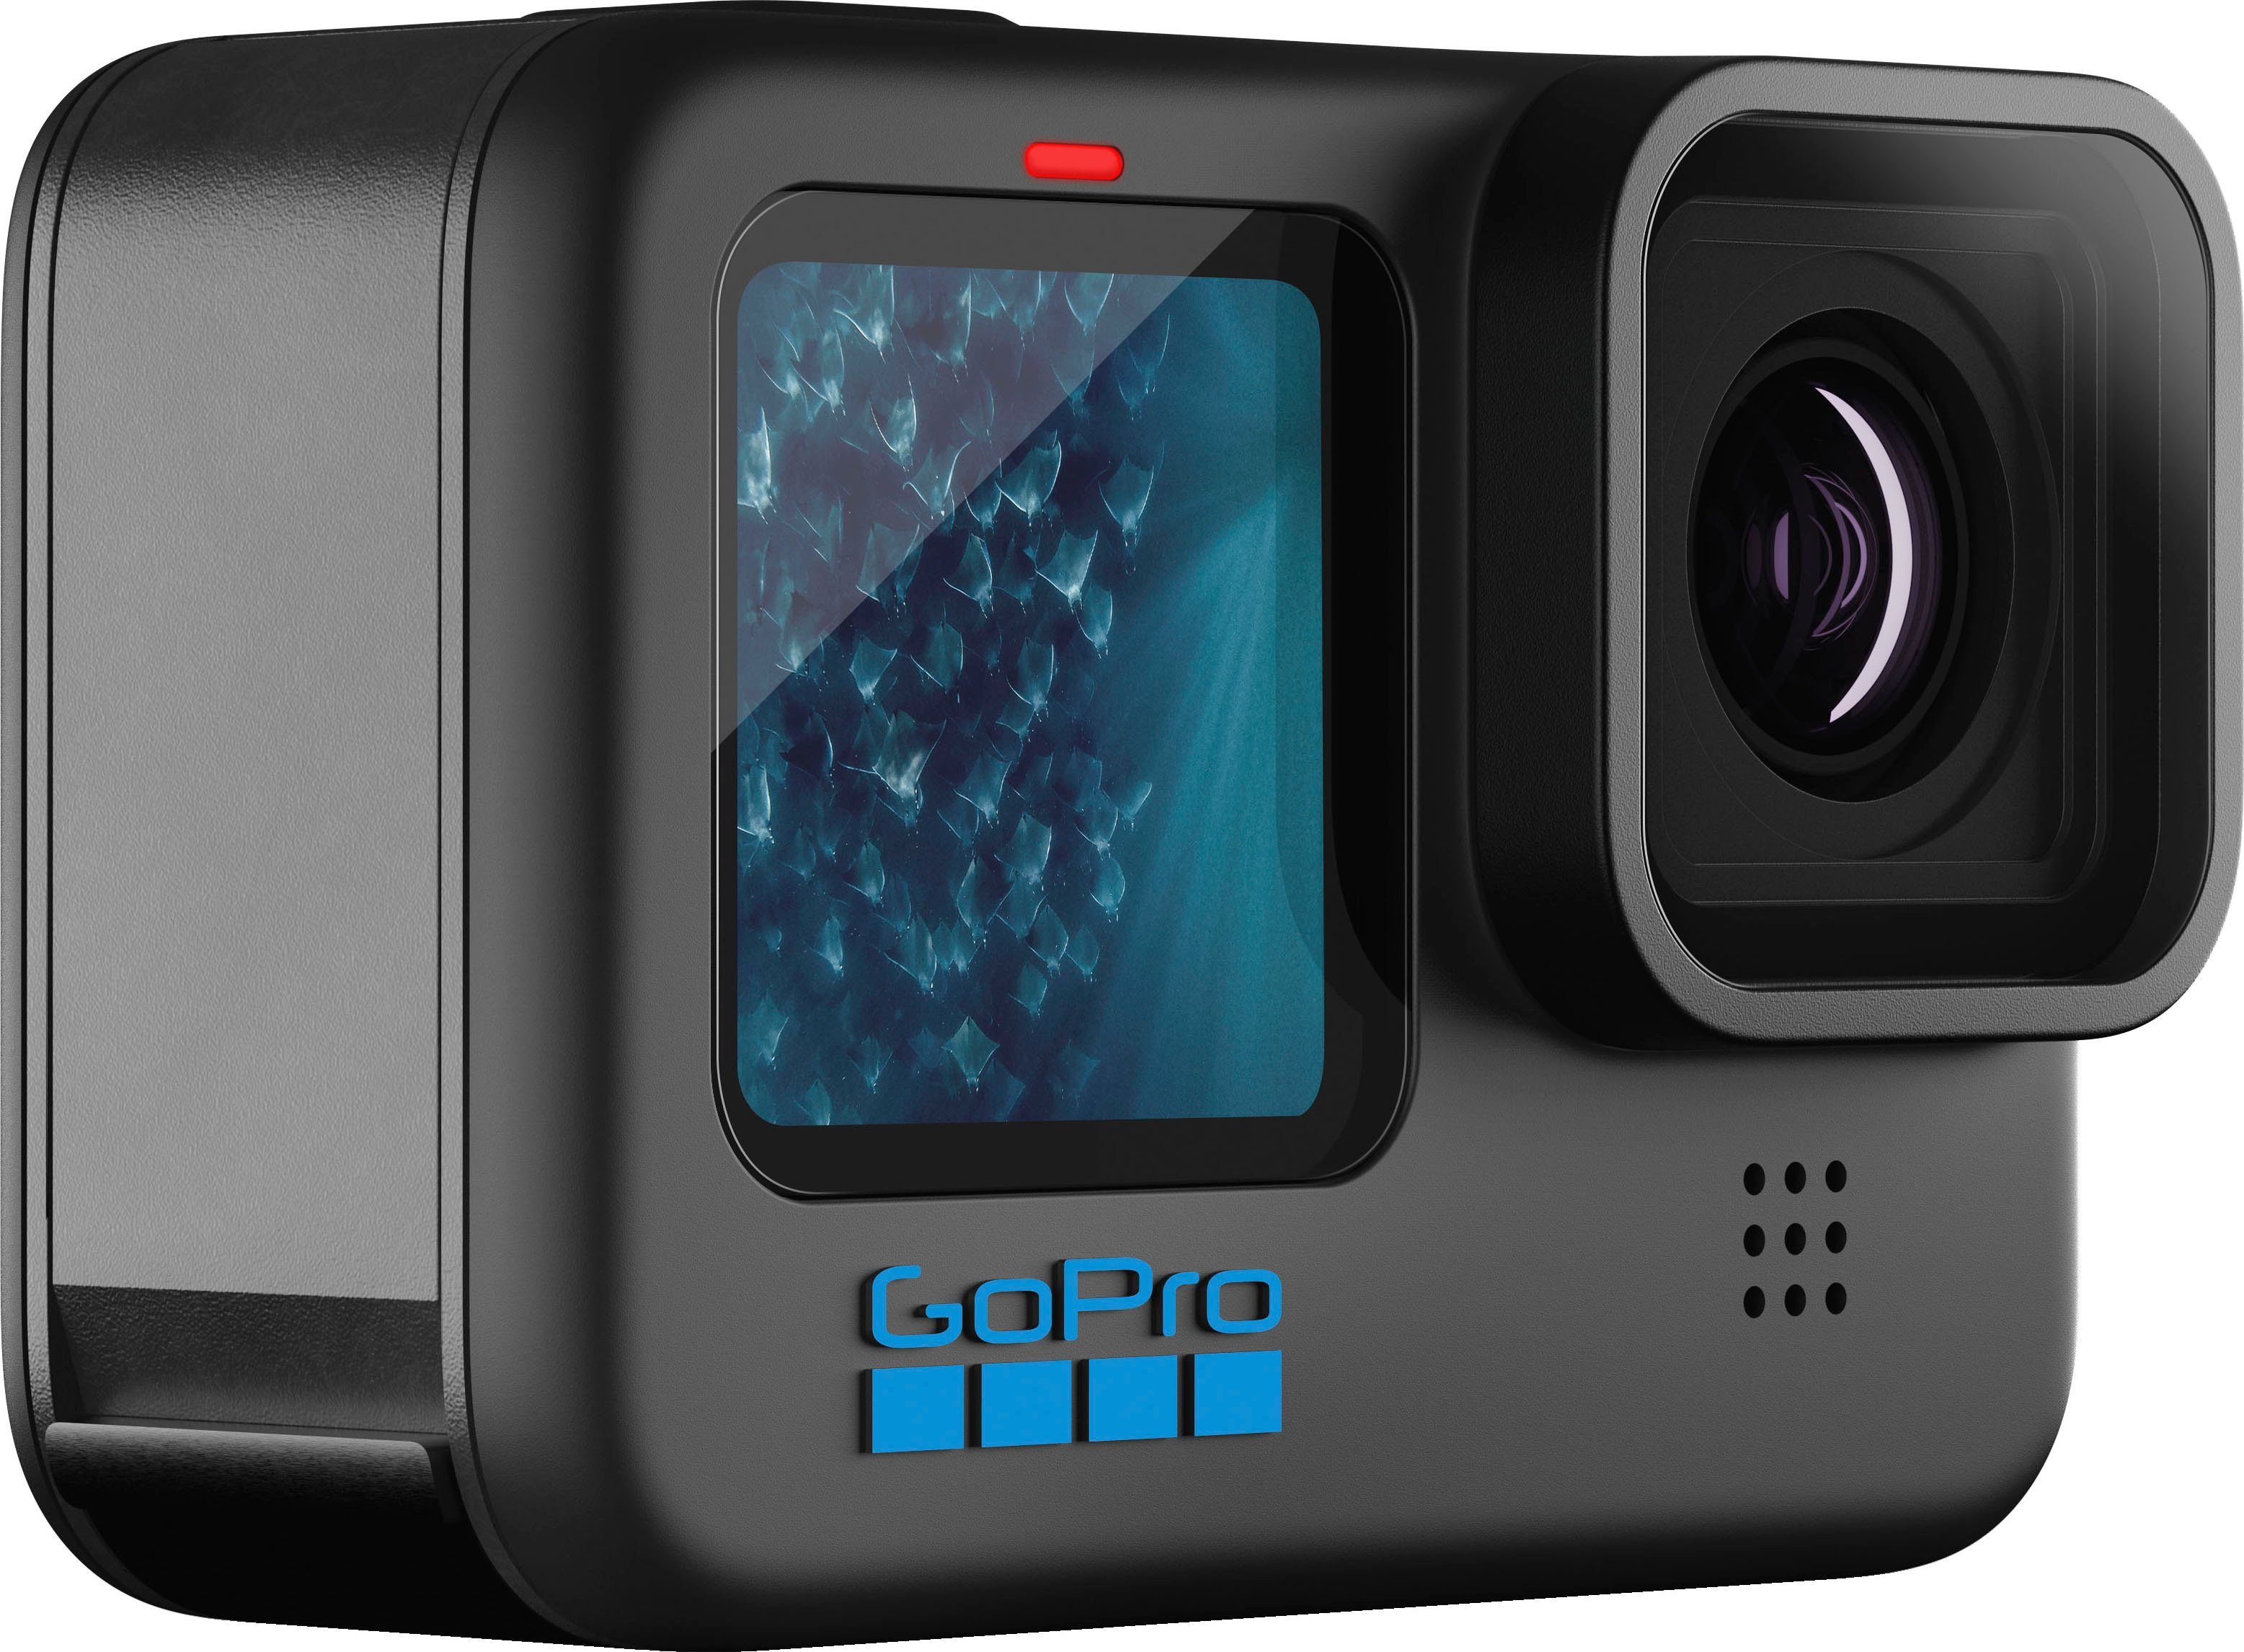 HERO11 (Wi-Fi) Black WLAN Camcorder GoPro (Bluetooth,